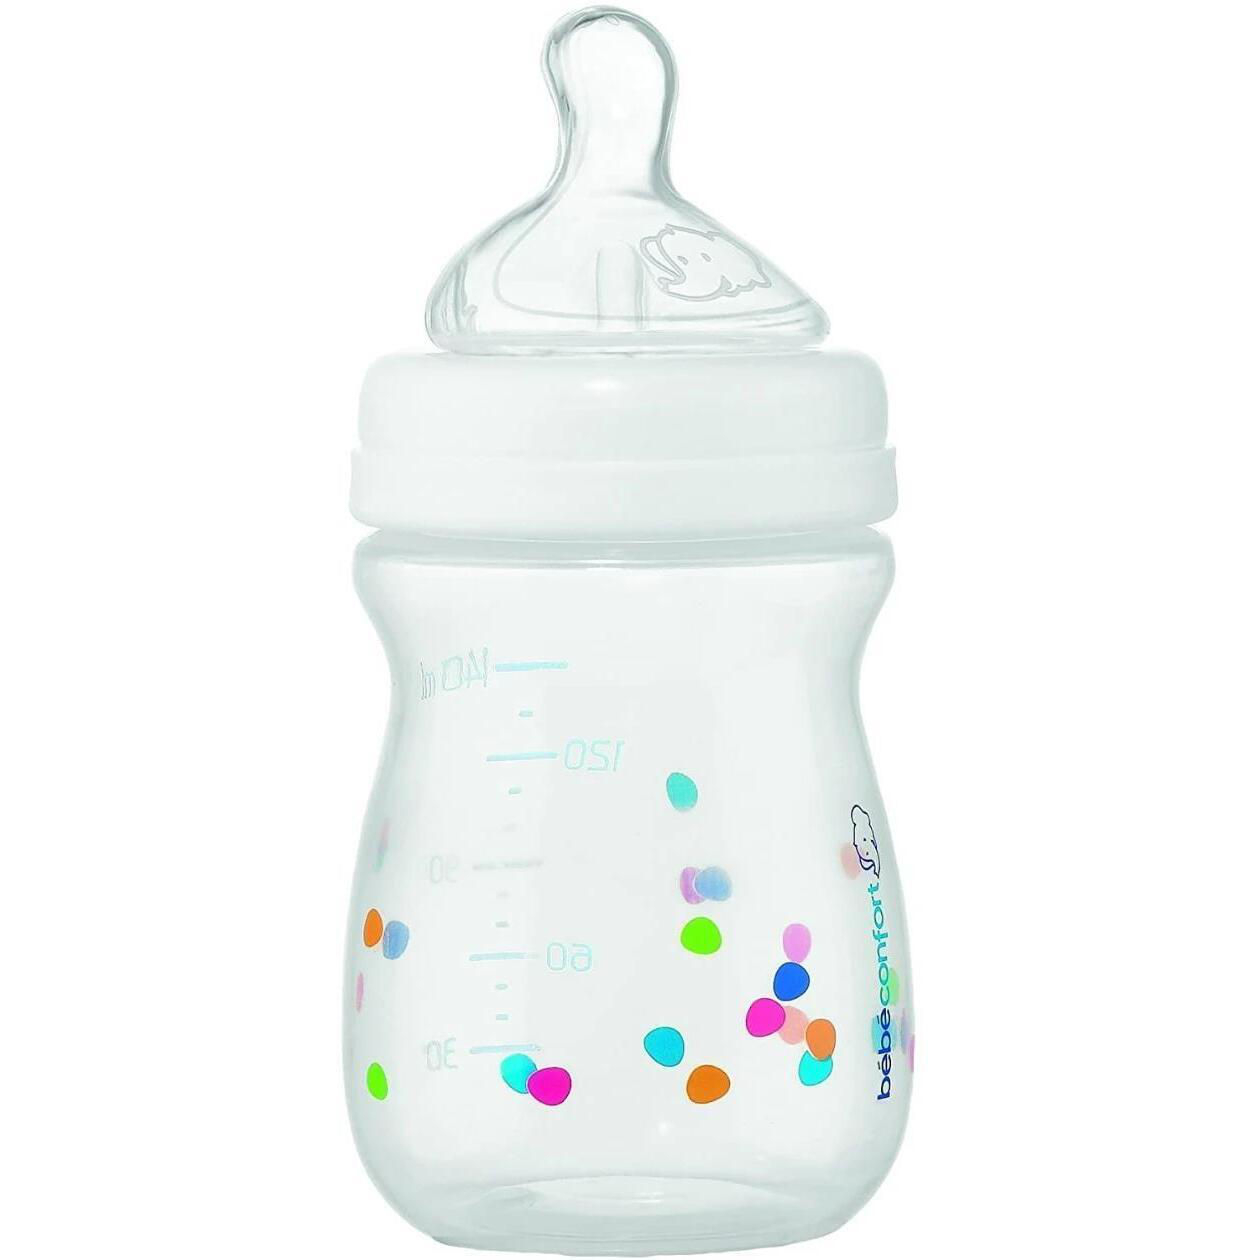 Стеклянная бутылочка новорожденного. Бутылочка Чикко для новорожденных синяя. Бутылочка Chicco Belling Glass 260. Младенец с бутылочкой. Бутылочки с соской для новорожденных.